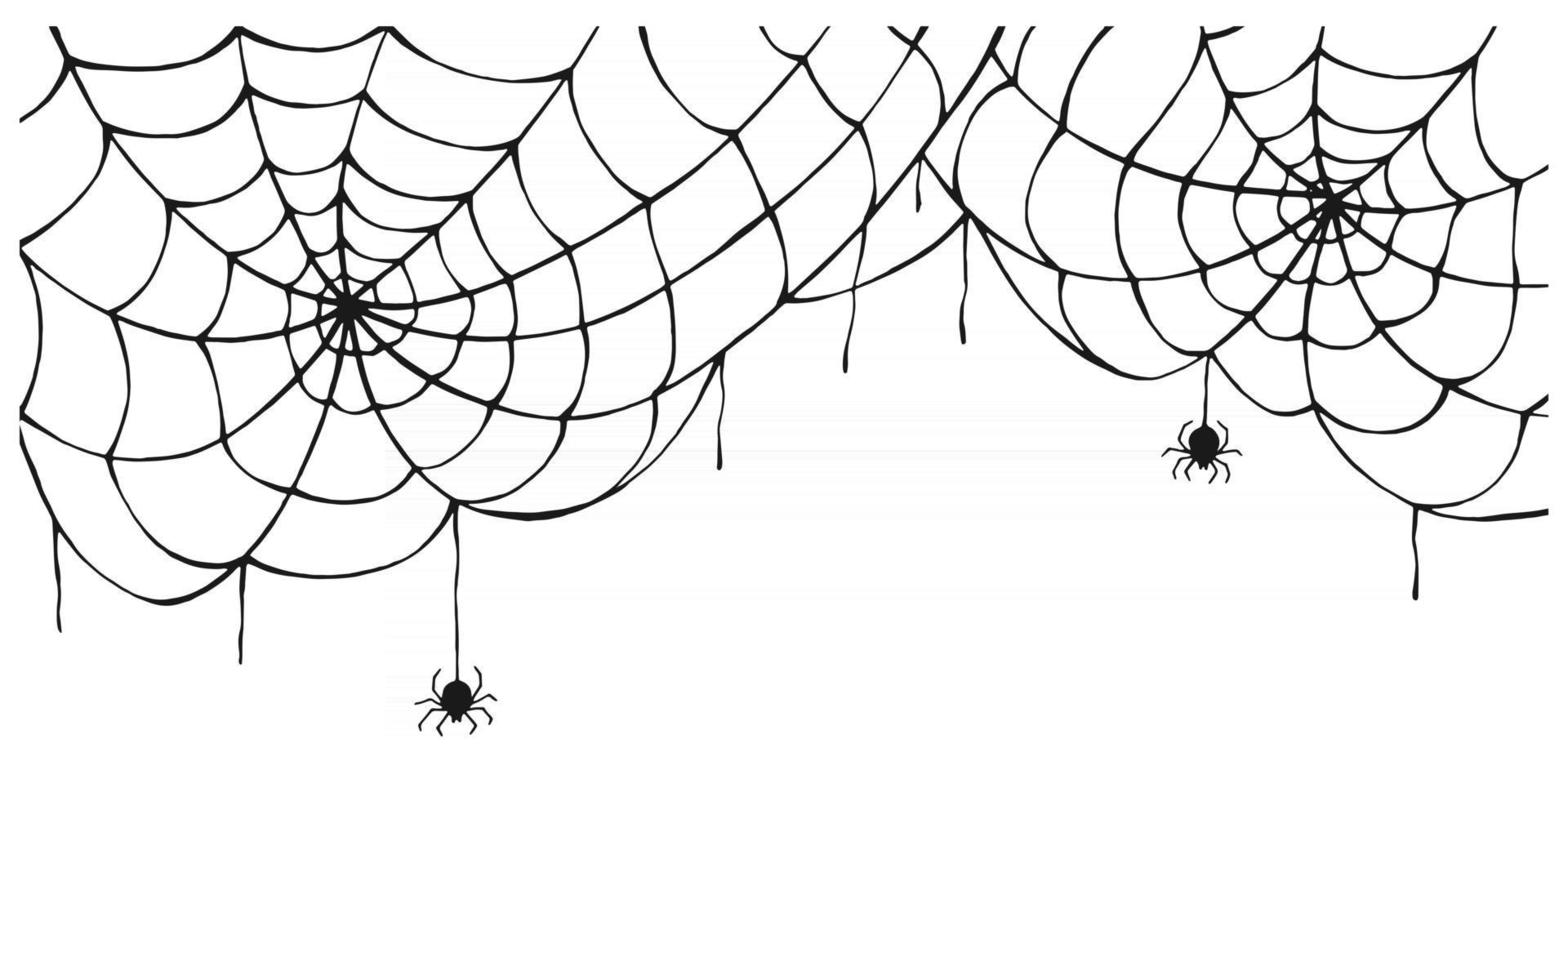 fundo de teia de aranha. teia de aranha assustadora com aranha assustadora, isolada no fundo branco. desenhado à mão. decoração de halloween, modelo de vetor de design de tatuagem de textura líquida.